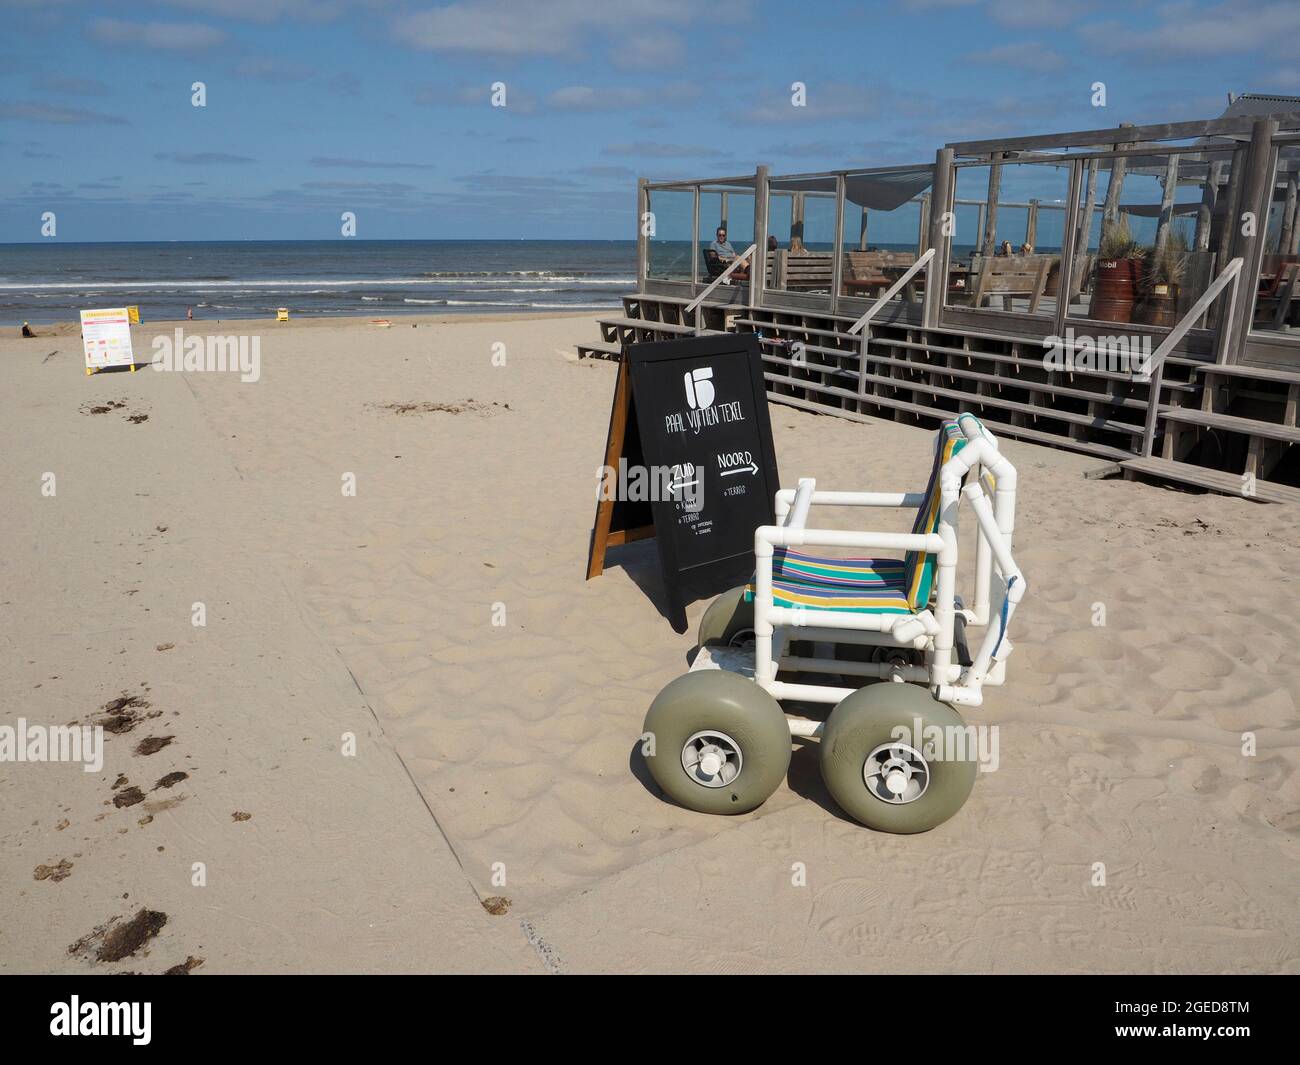 Speciale sedia a rotelle da spiaggia per dare ai disabili la possibilità di godere della spiaggia a Paal 15, Texel Island, Paesi Bassi Foto Stock